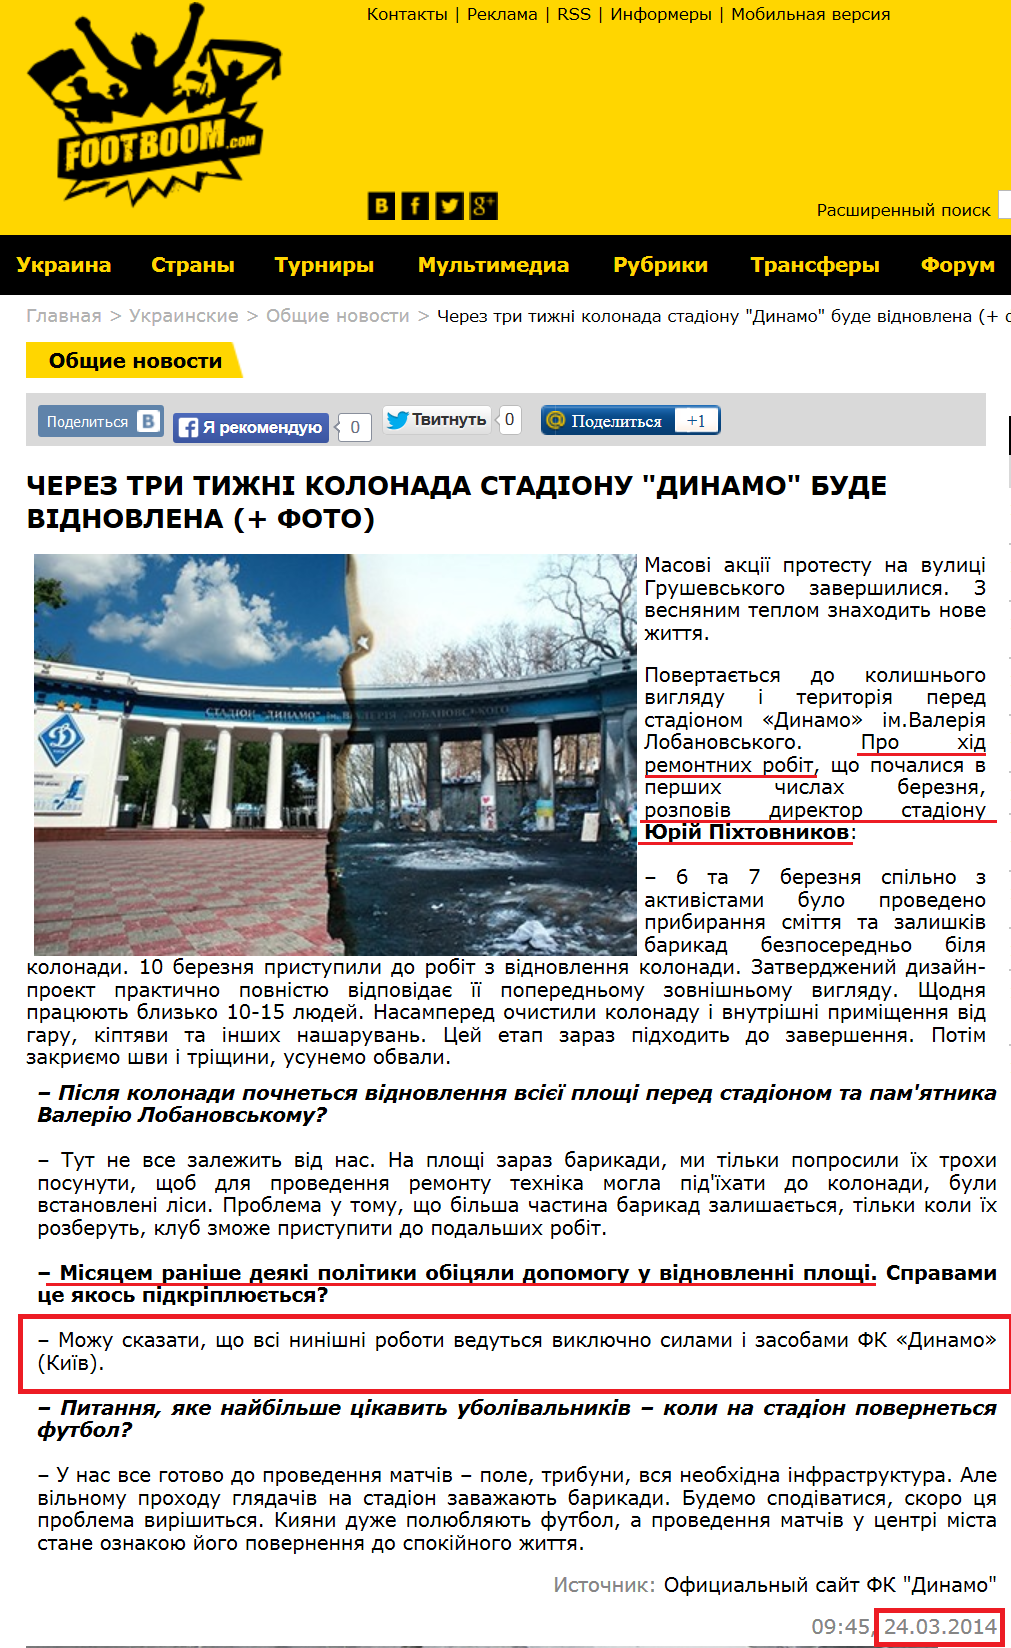 http://www.footboom.com/ukrainian/news/24-03-2014-Cherez-try-tyzhni-kolonada-stadionu-Dynamo-bude-vidnovlena-foto.html